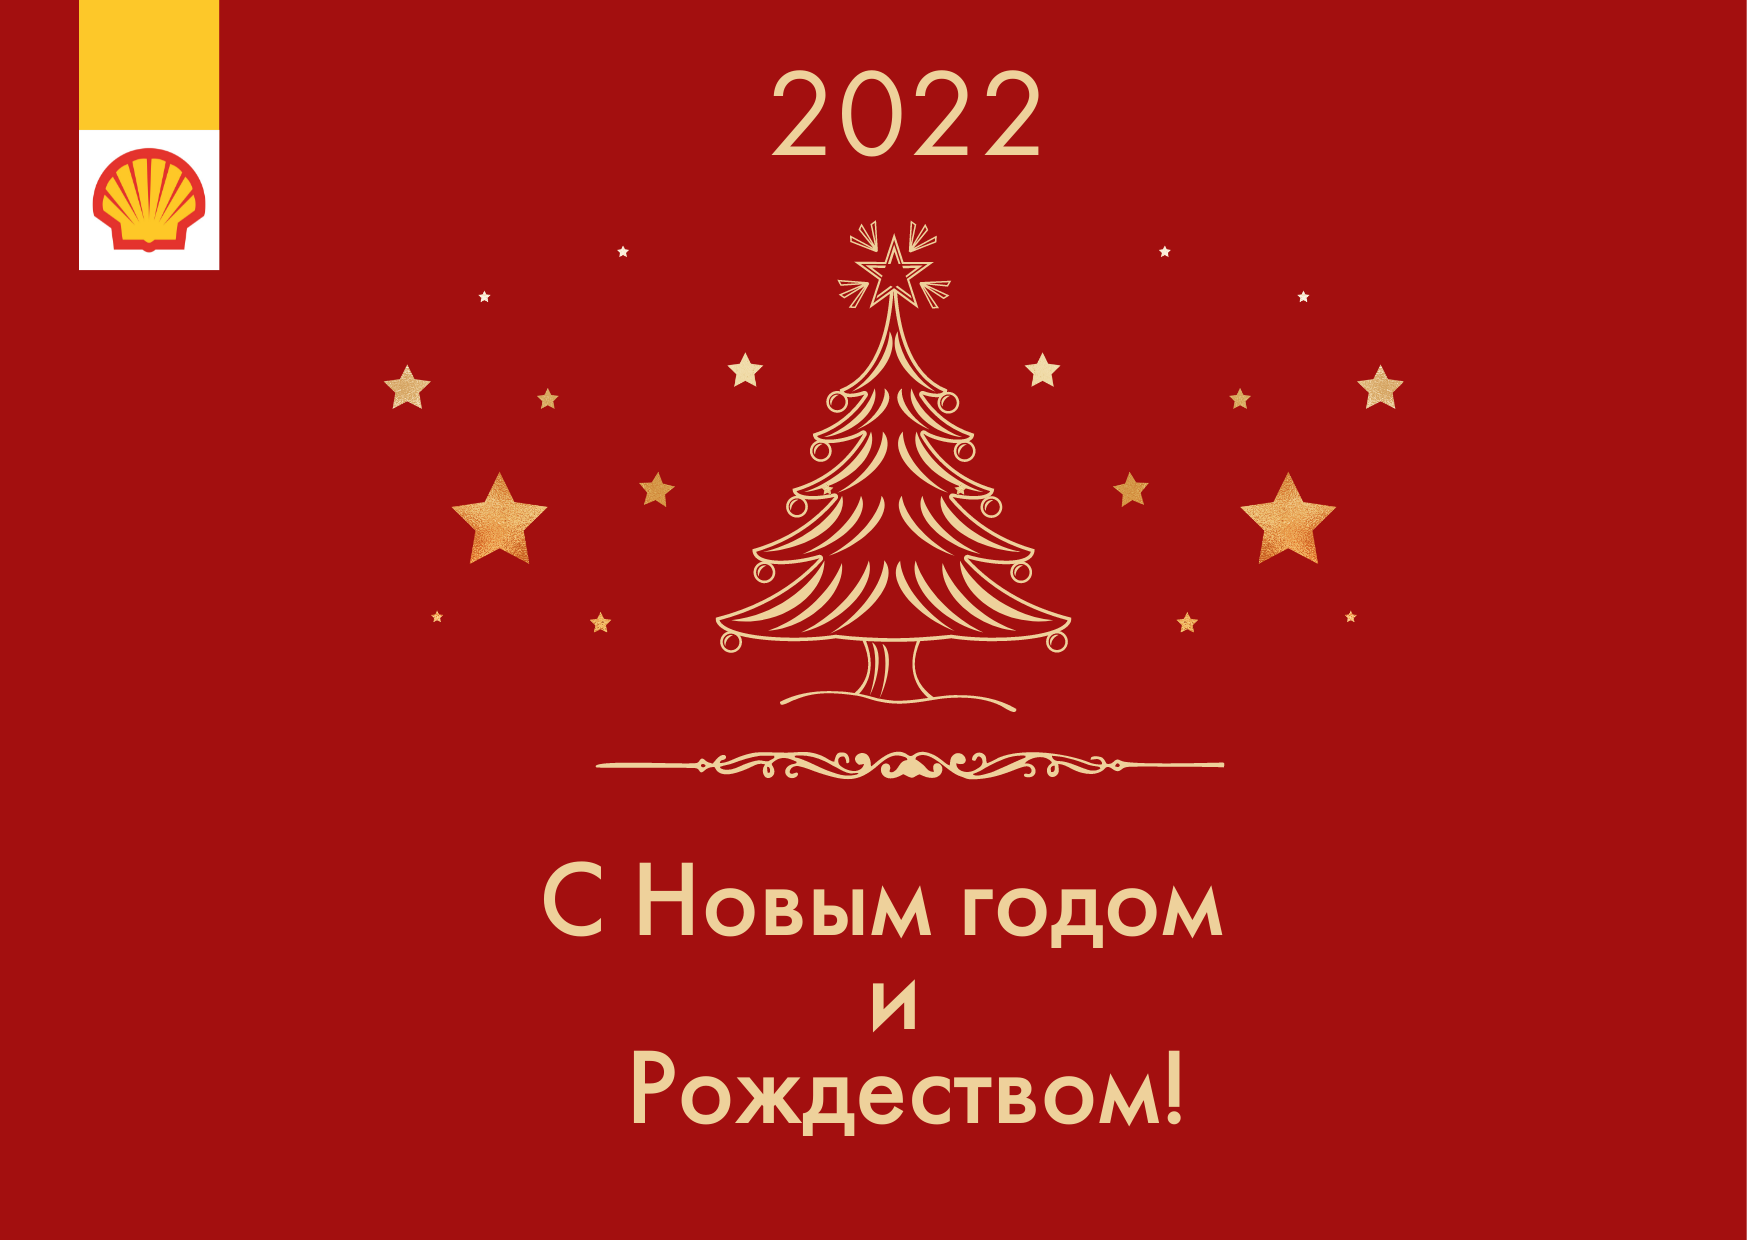 Режим работы ЦЗМ SHELL Helix и АВТОДИСКОНТ в предновогодние и праздничные дни 2022 года